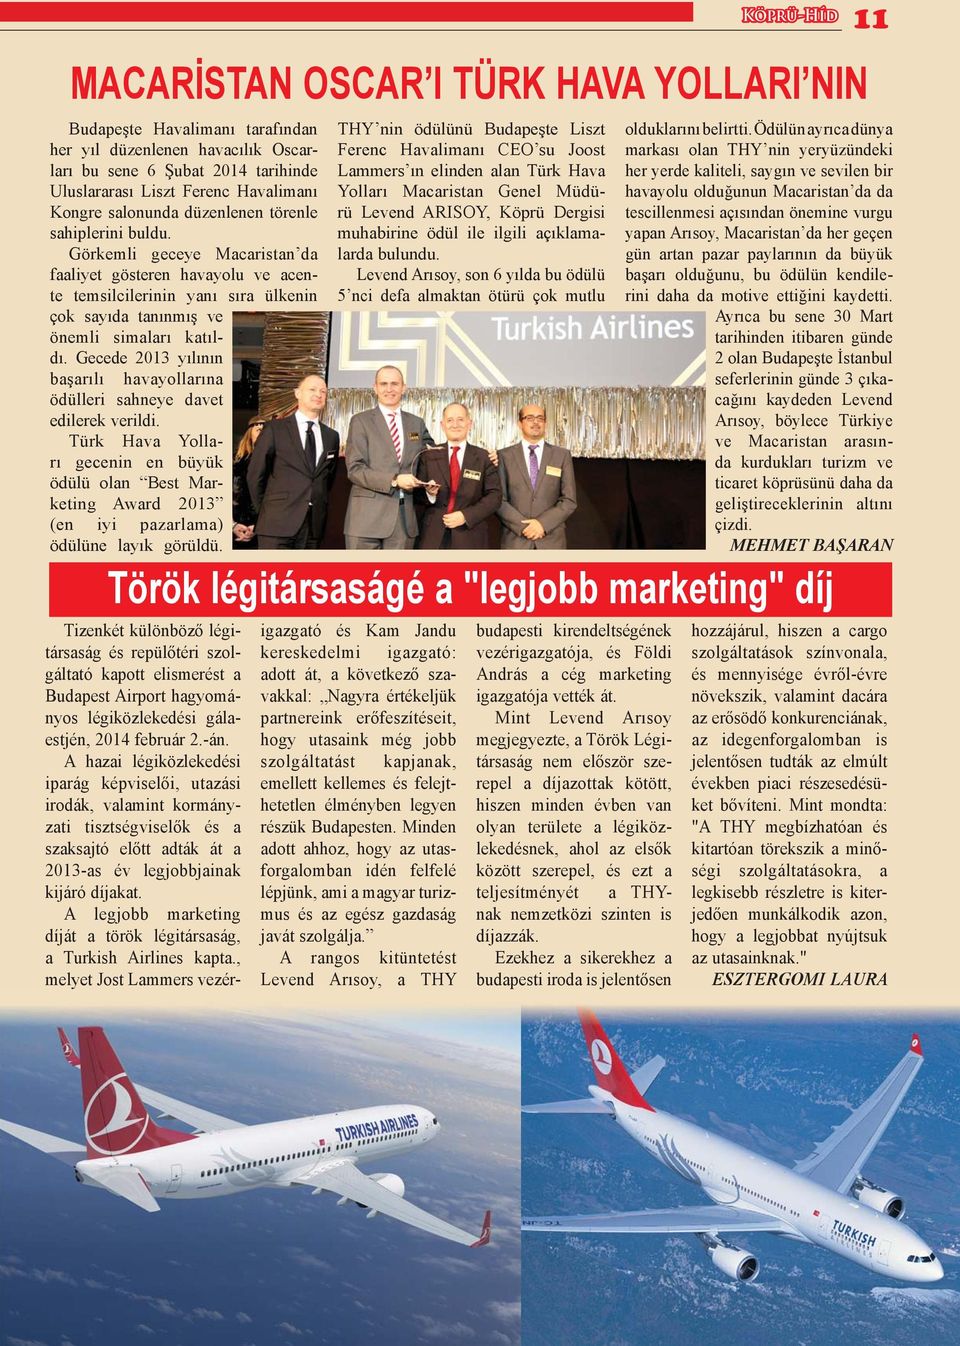 Gecede 2013 yılının başarılı havayollarına ödülleri sahneye davet edilerek verildi. Türk Hava Yolları gecenin en büyük ödülü olan Best Marketing Award 2013 (en iyi pazarlama) ödülüne layık görüldü.